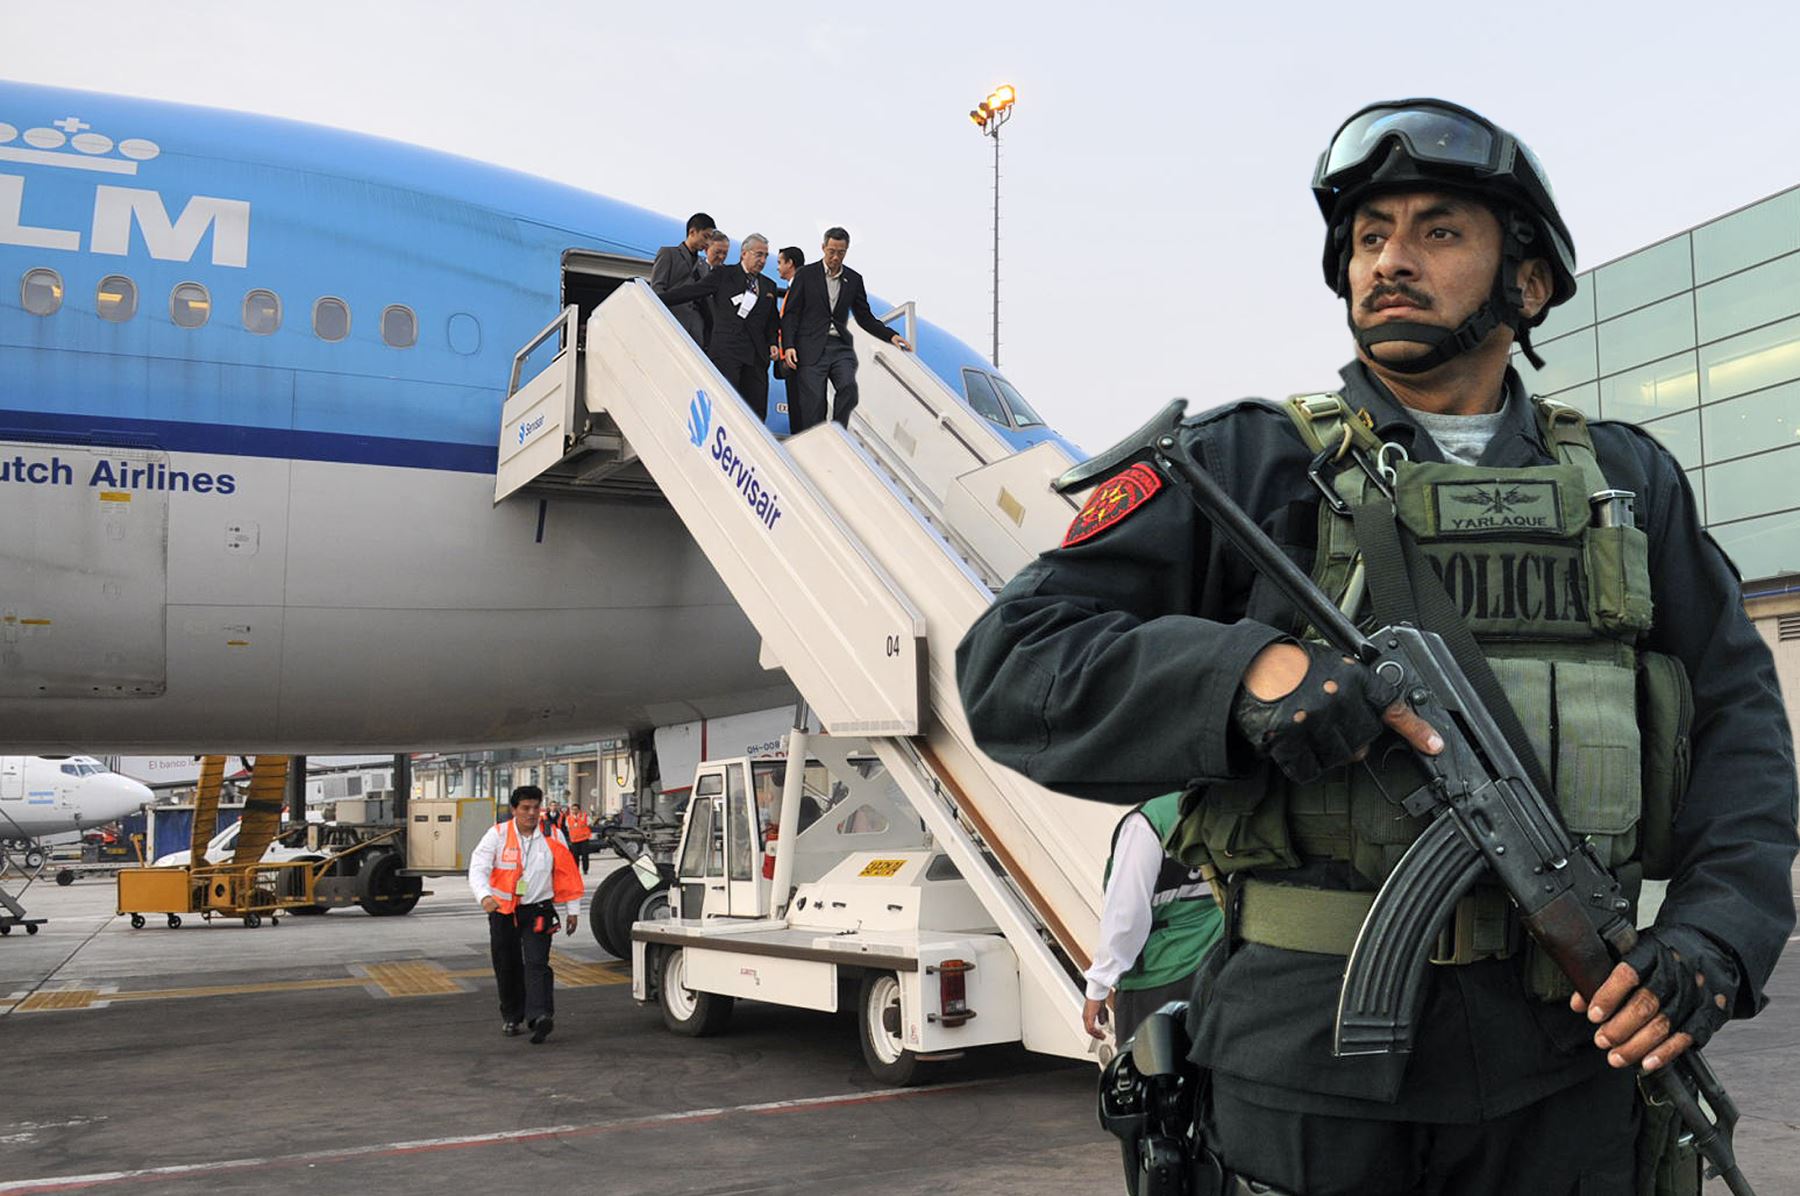 11,500 policías darán seguridad a líderes mundiales que llegarán para Cumbre APEC | Noticias | Agencia Peruana de Noticias Andina